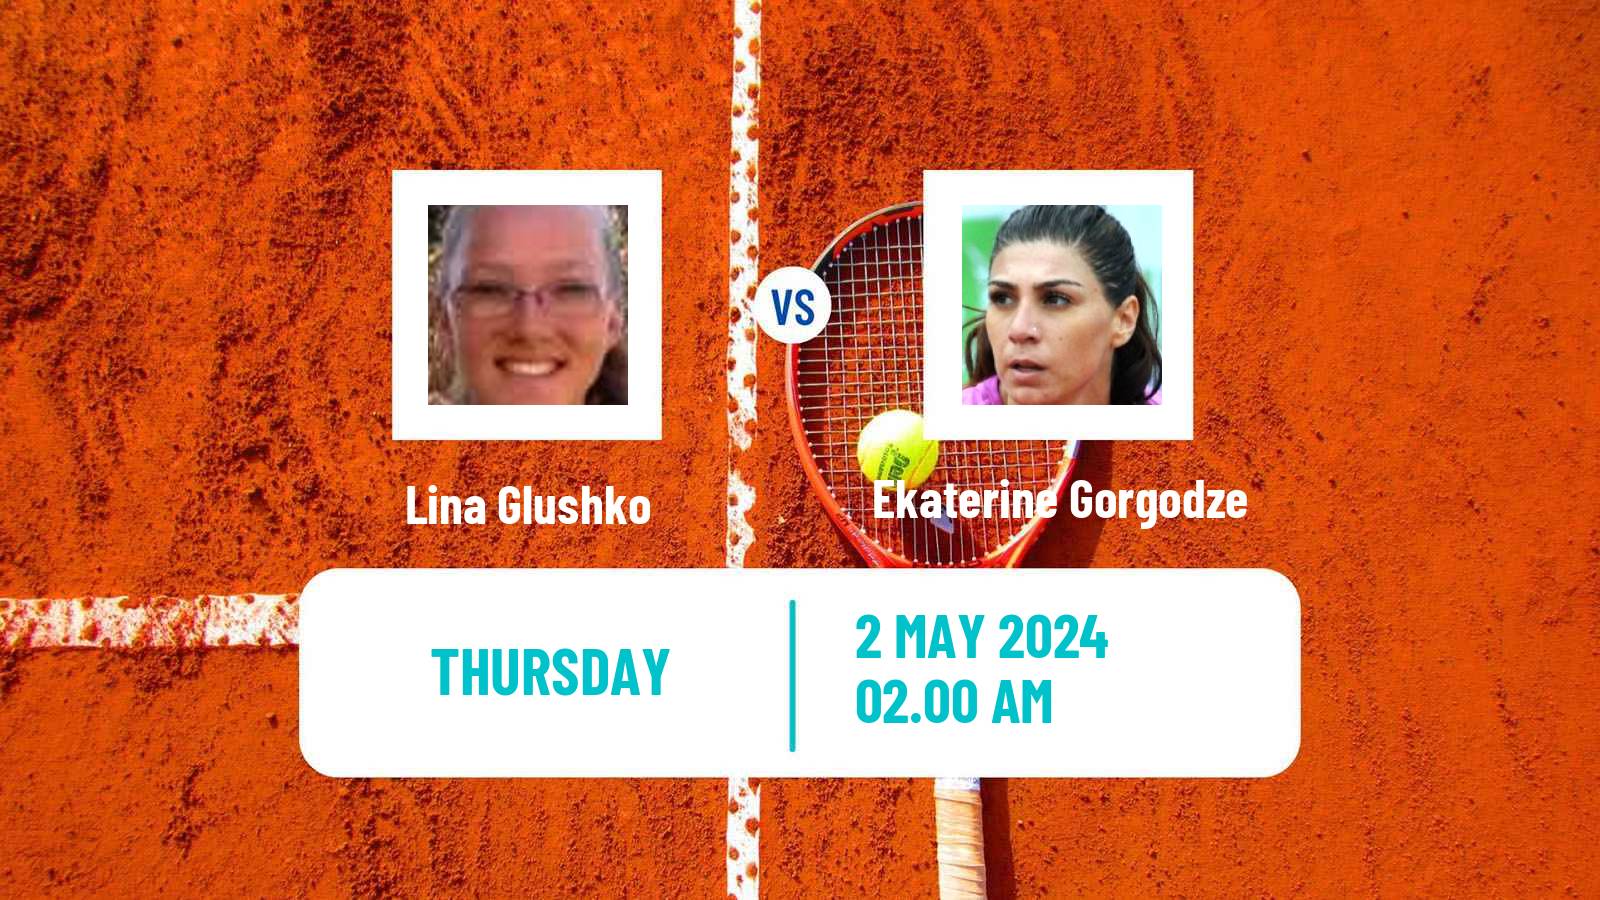 Tennis ITF W50 Lopota 2 Women Lina Glushko - Ekaterine Gorgodze